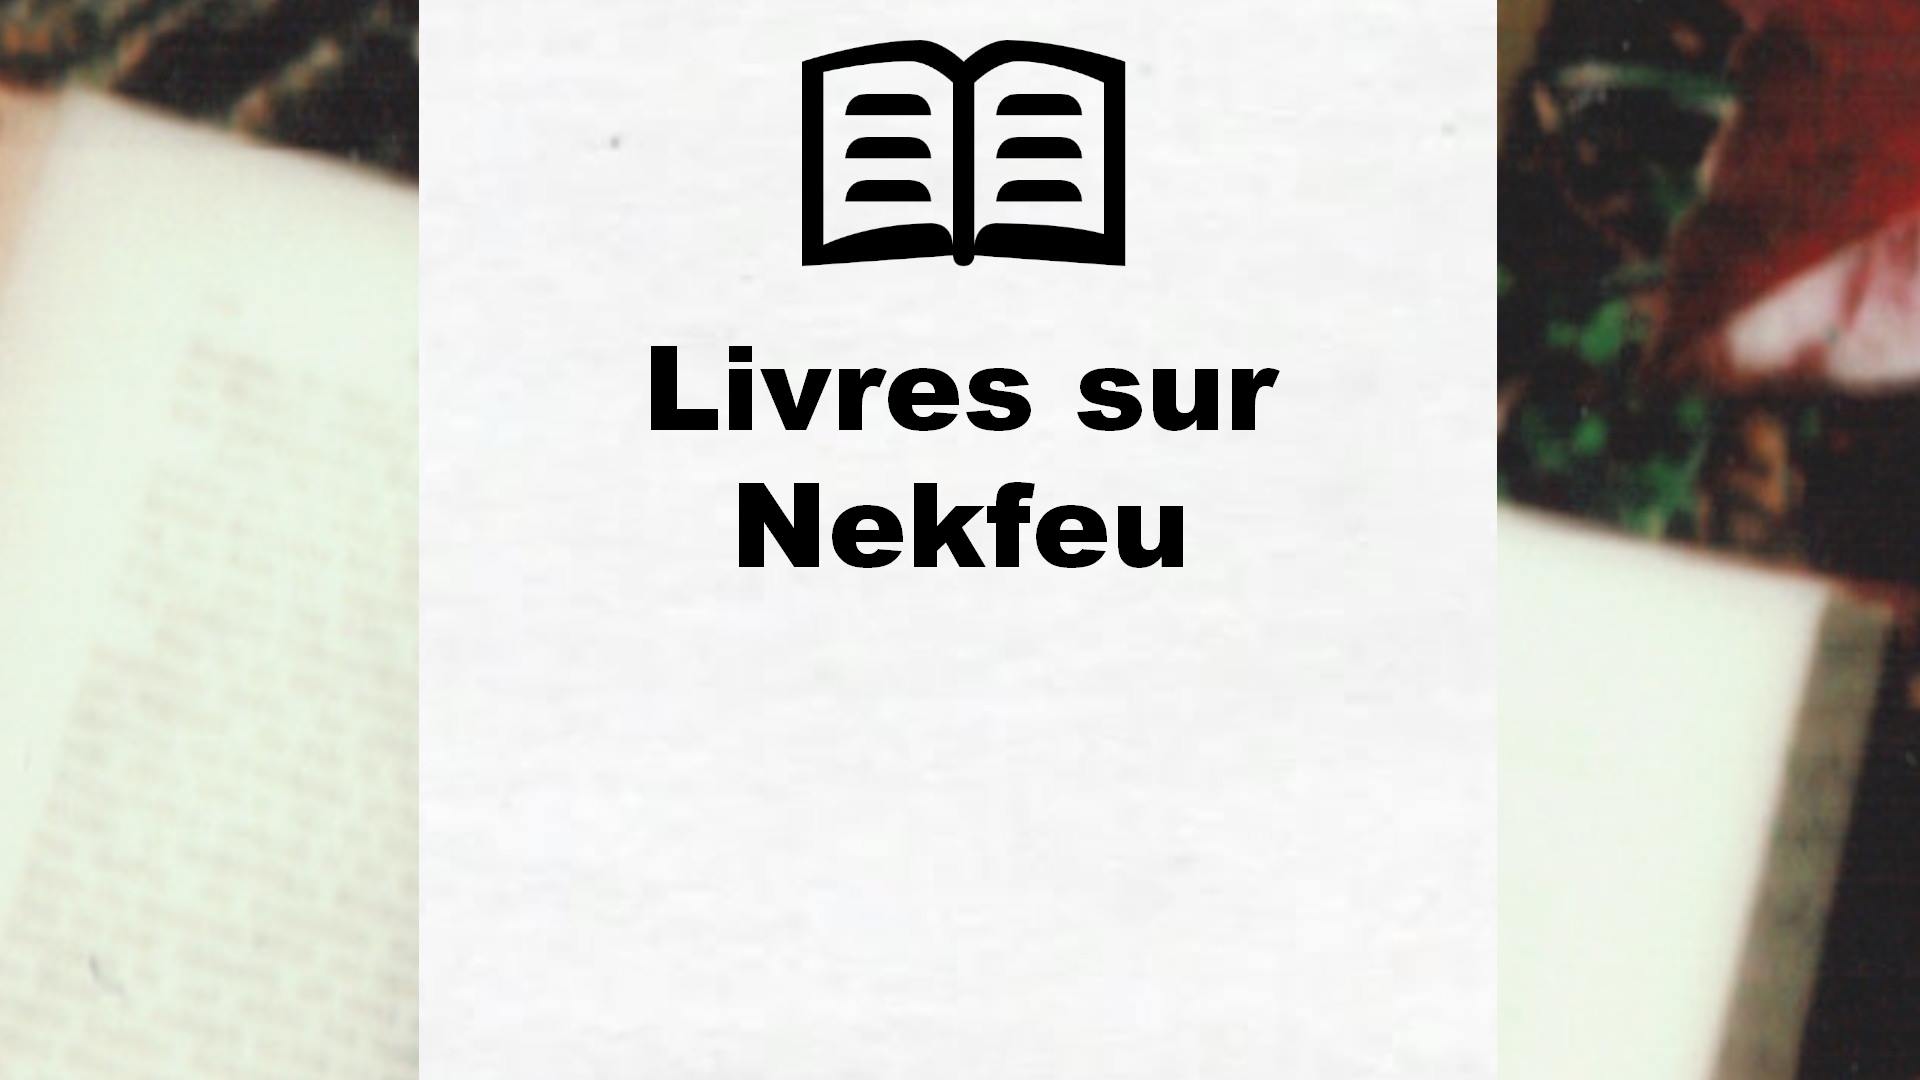 Livres sur Nekfeu